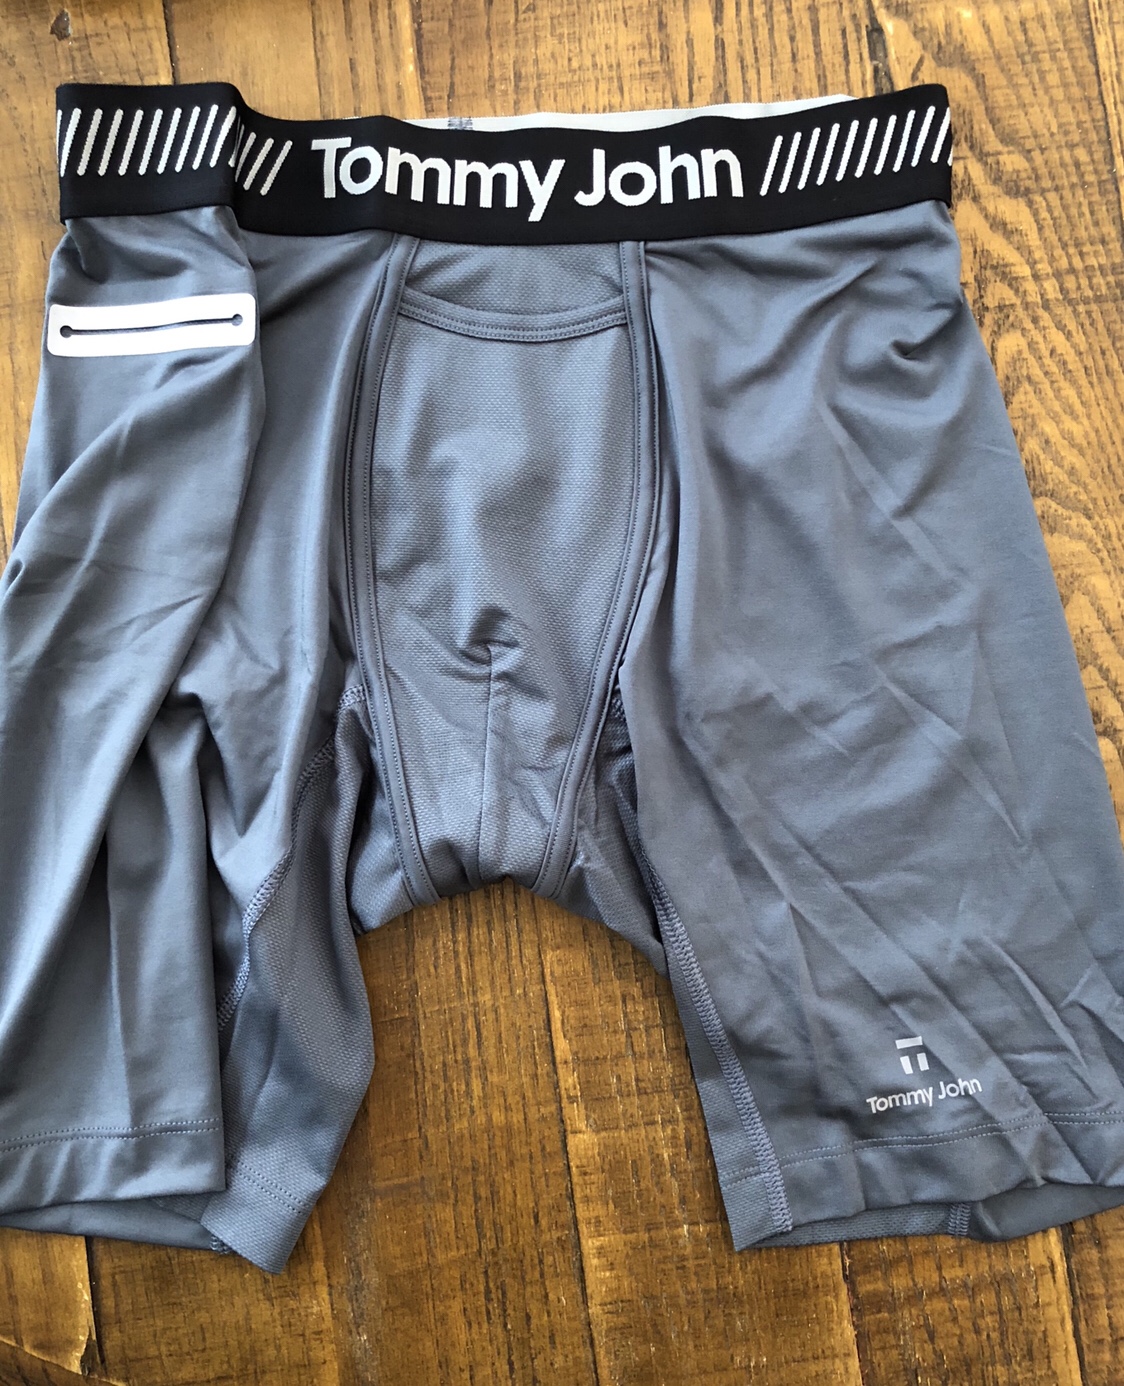 reviews tommy john underwear